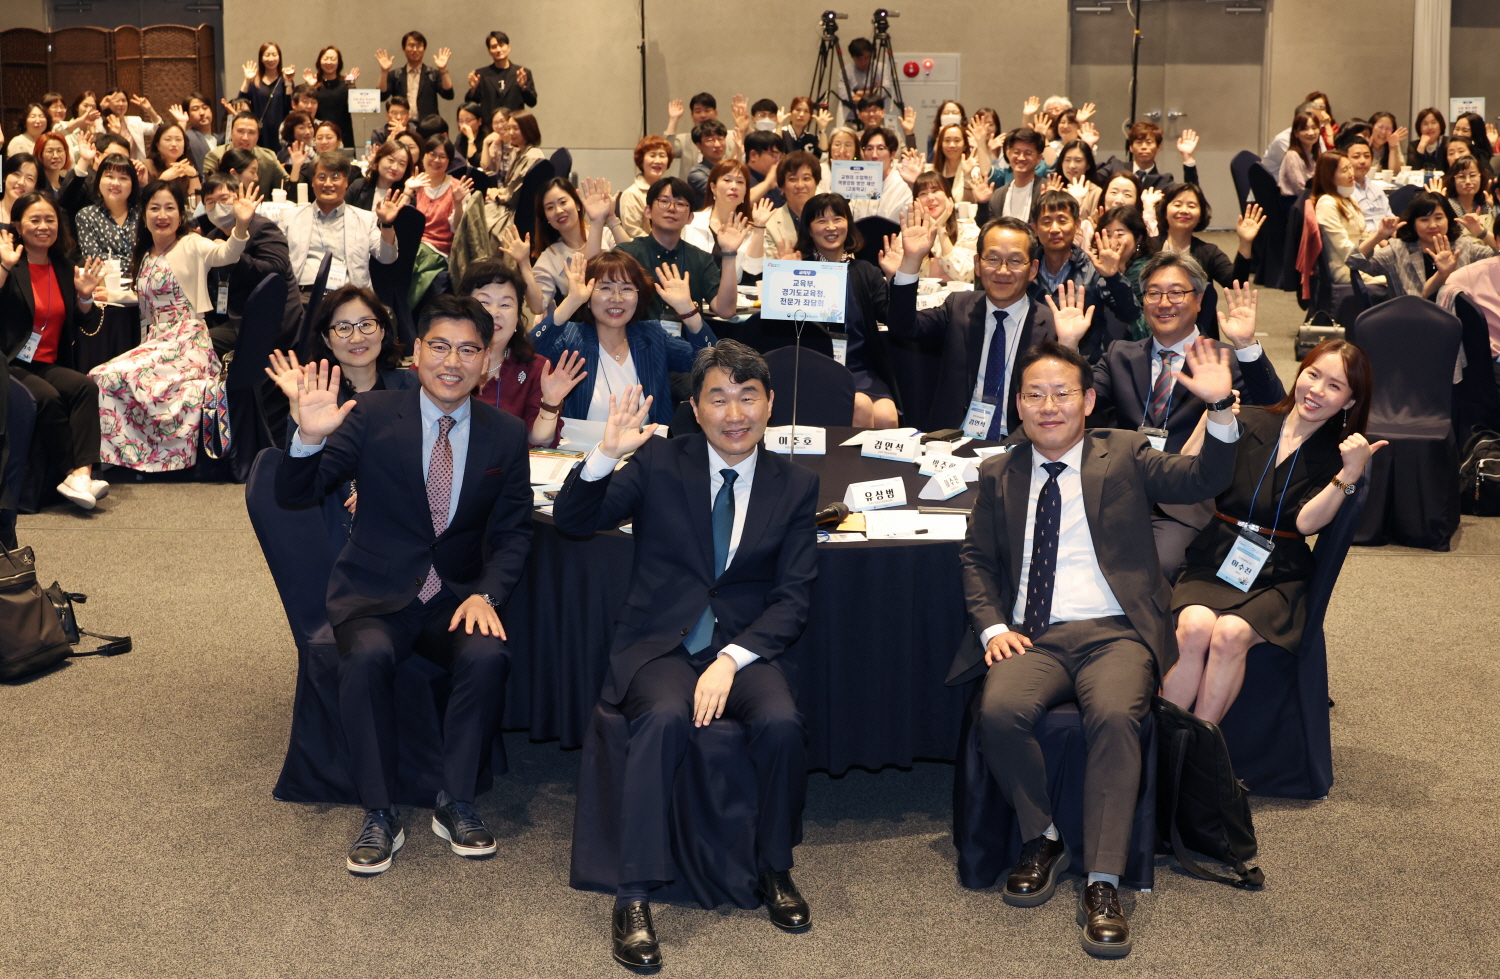 교육부는 5월 22일(월), 경기도 광명시 테이크호텔에서 현장교원 100명과 학교수업 혁신을 위한 소통의 자리를 마련했다.